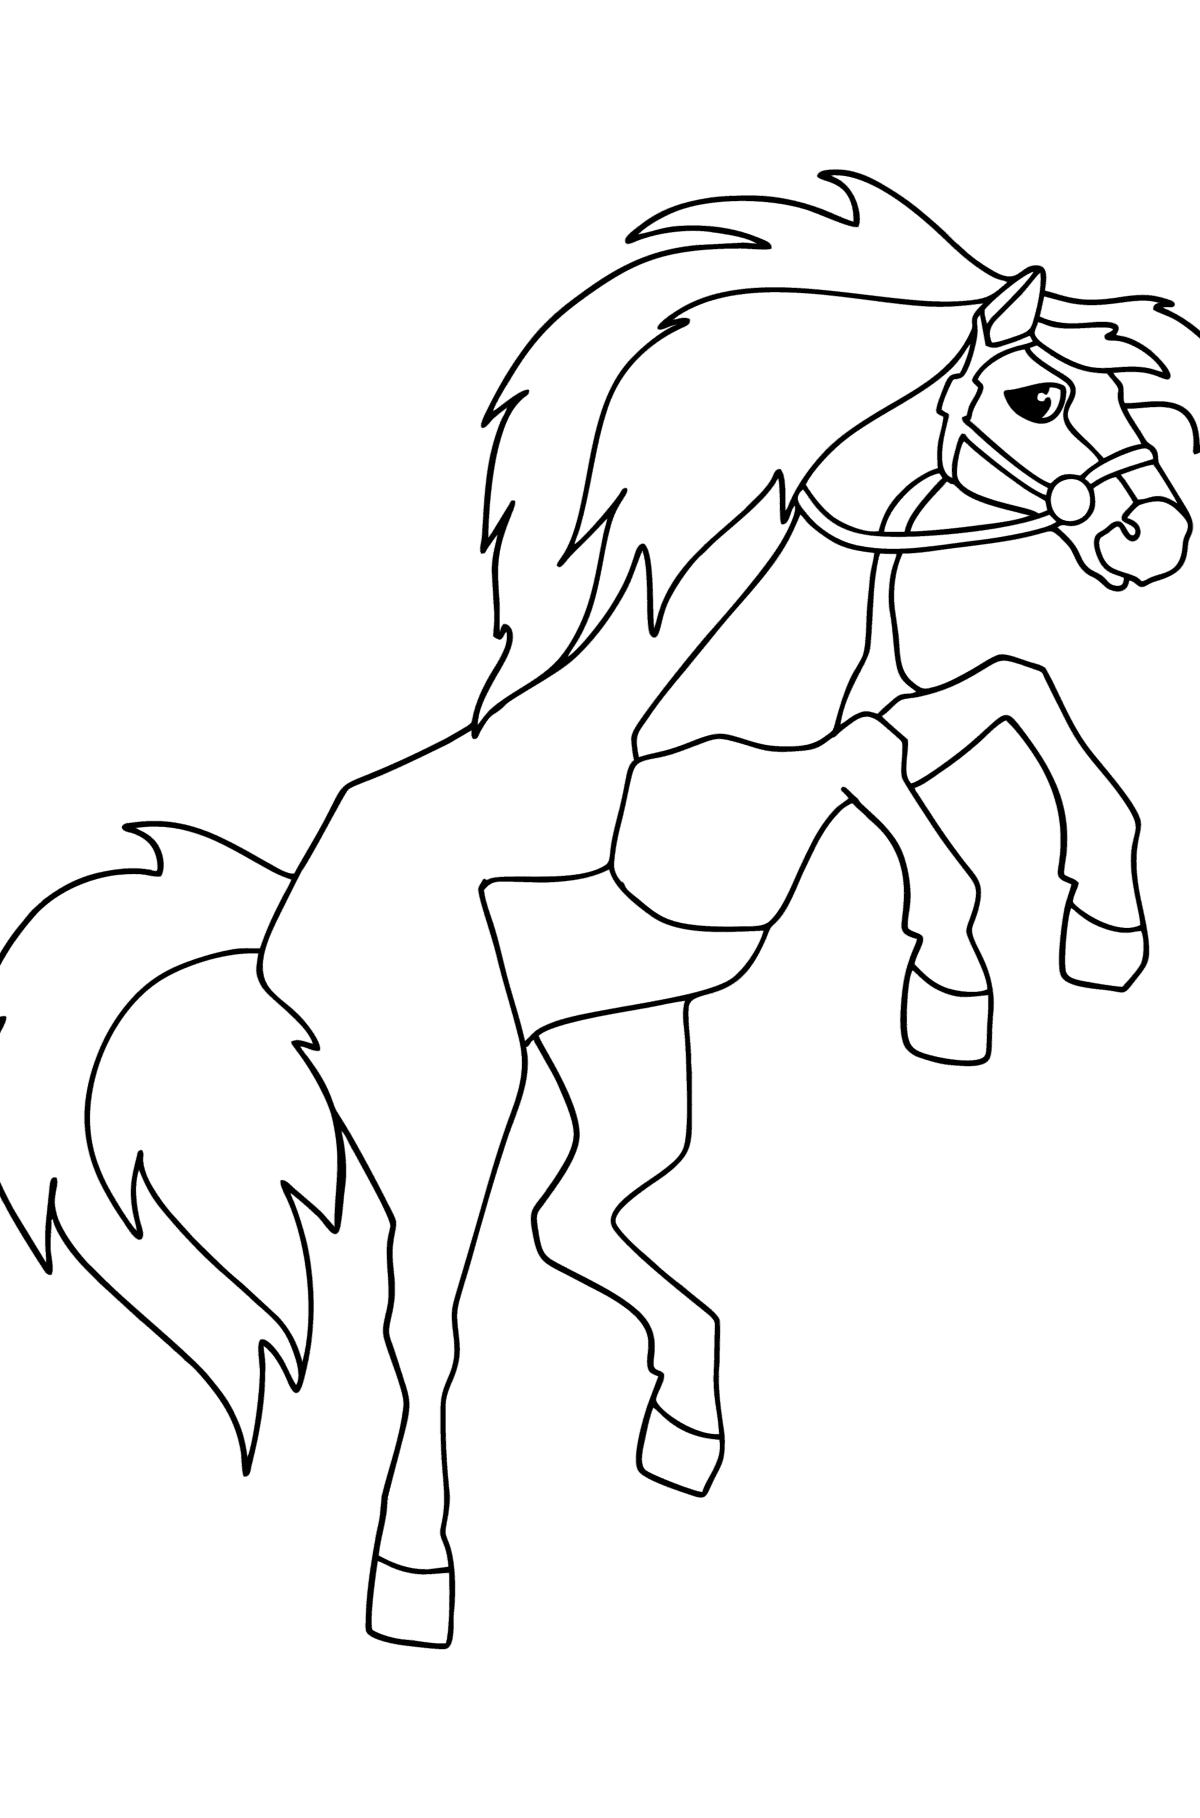 Tegning til fargelegging Galopperende hest - Tegninger til fargelegging for barn